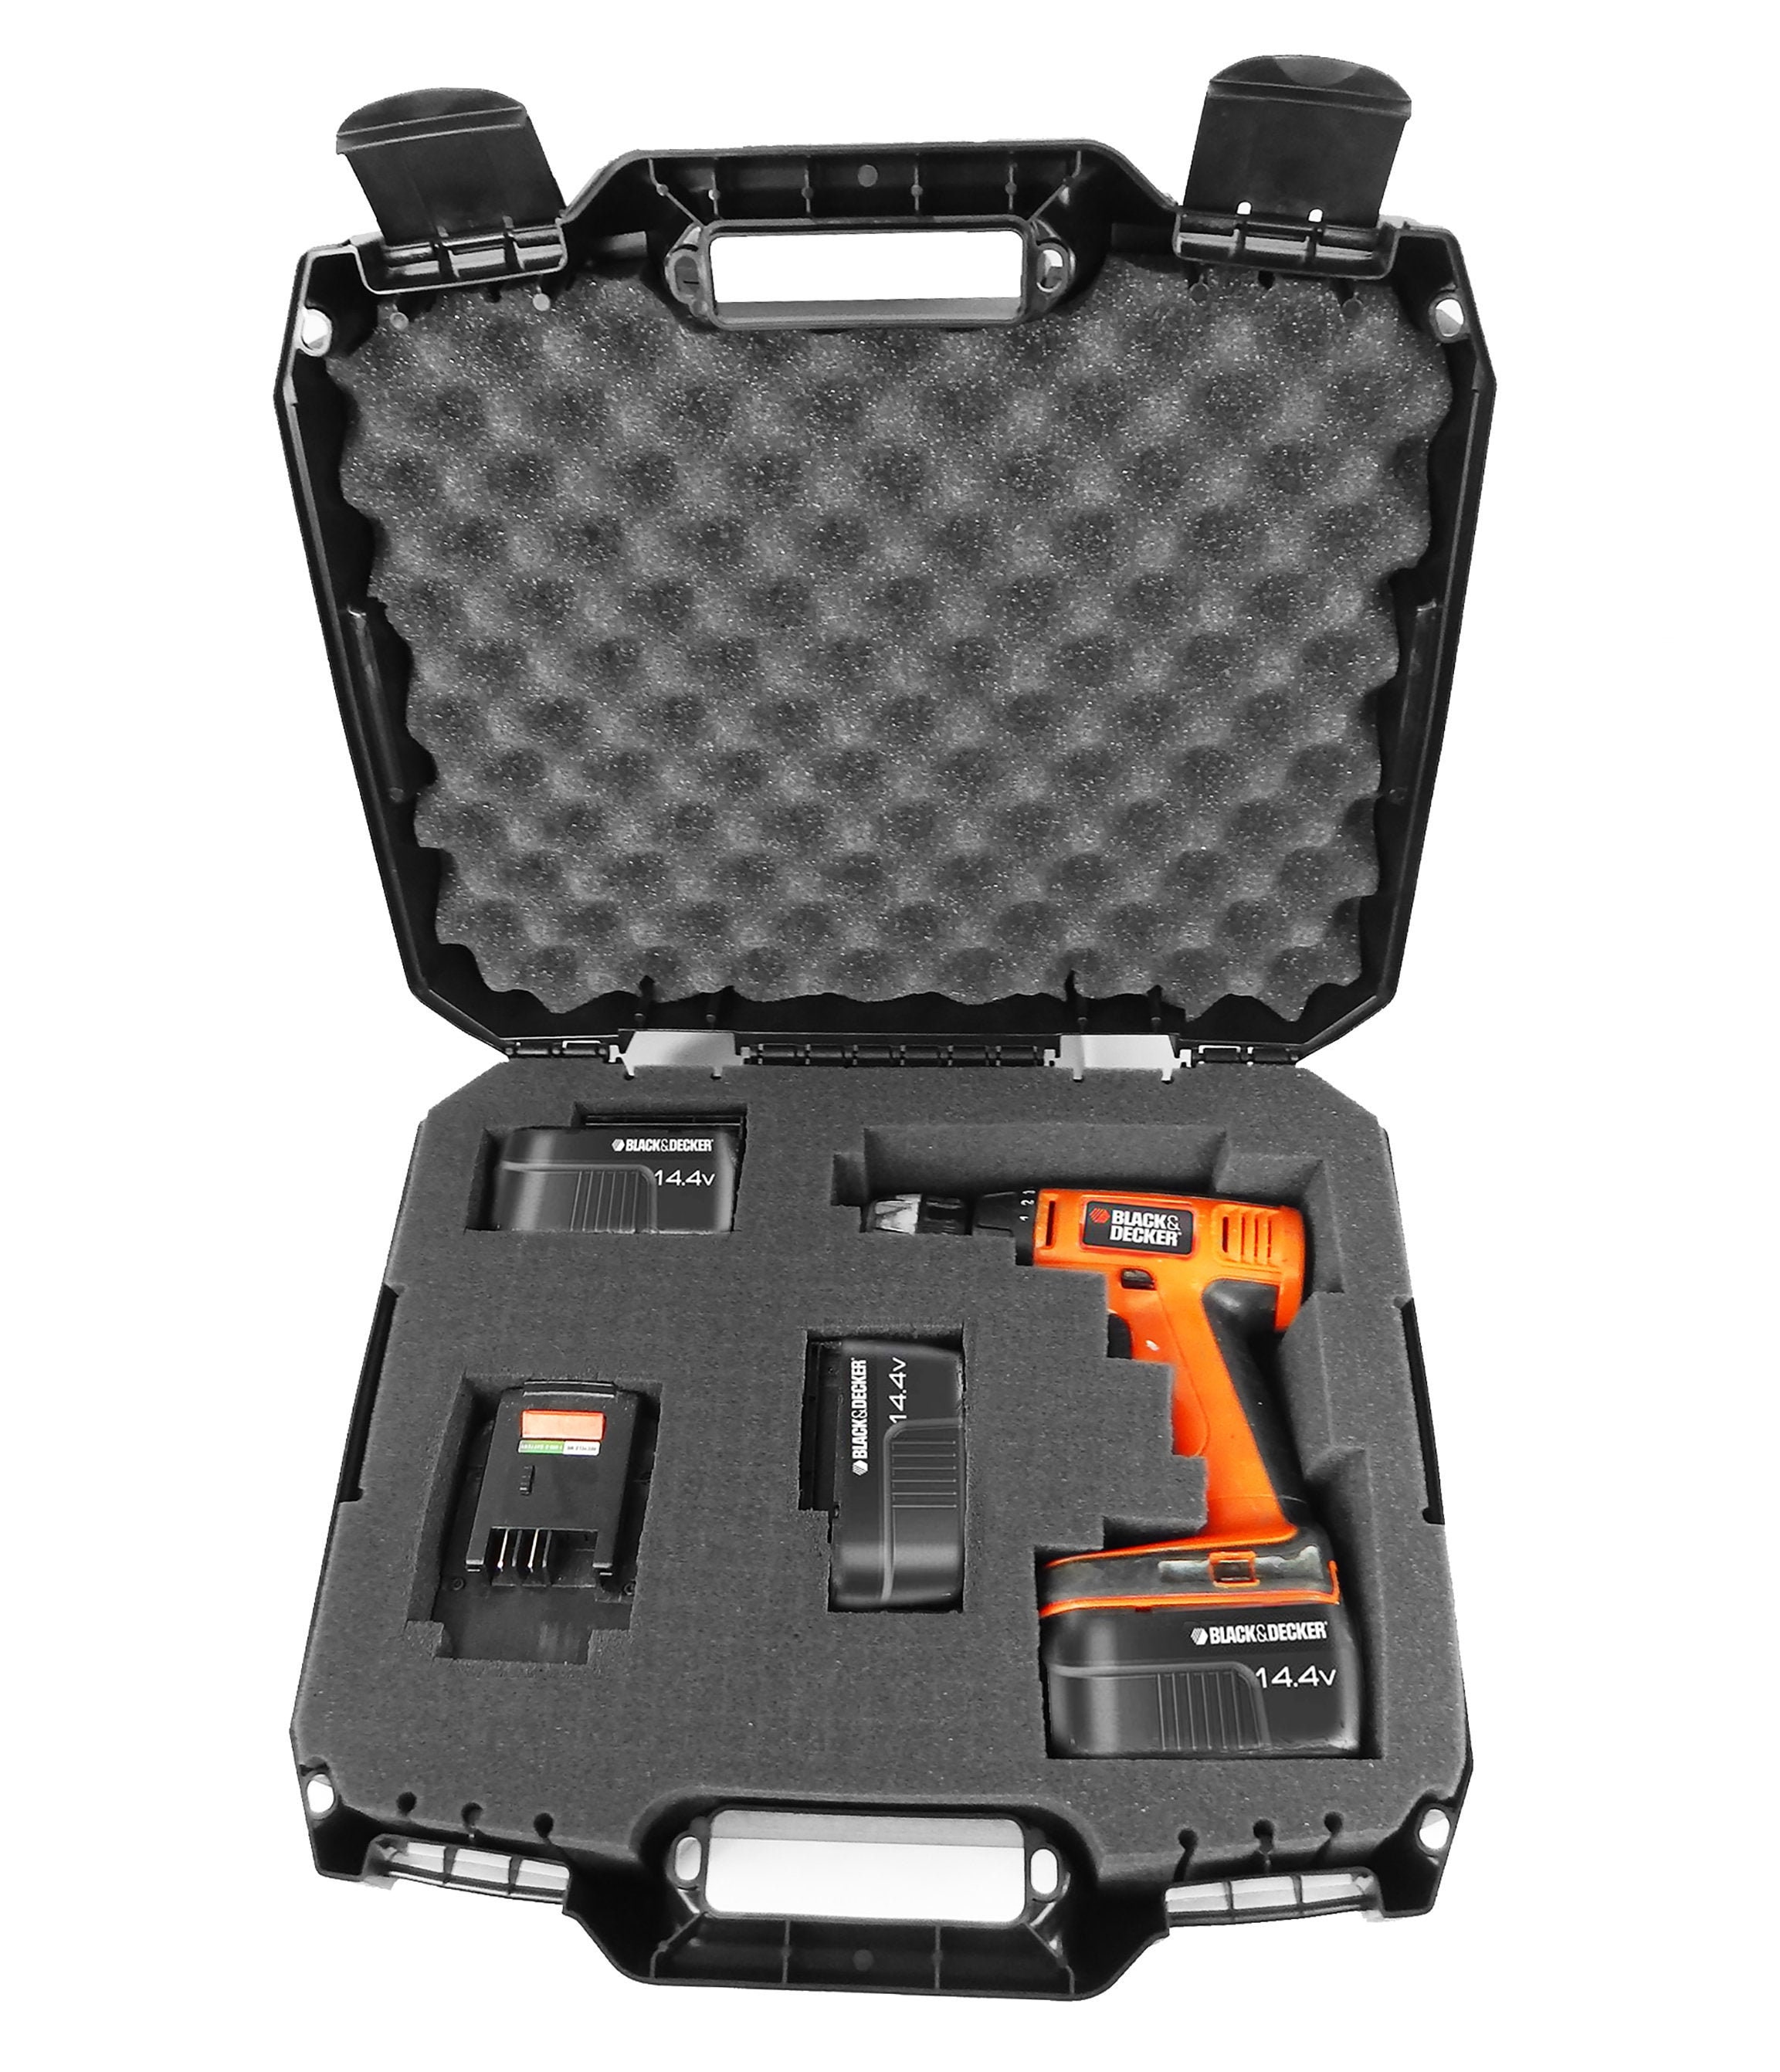 CM Drill Case Fits Black and Decker Cordless Drills or Drivers Model Ldx120  20 Volt, Ld120va, Bdcd120va, Bdcdmt120, Bdcdd220c and More 